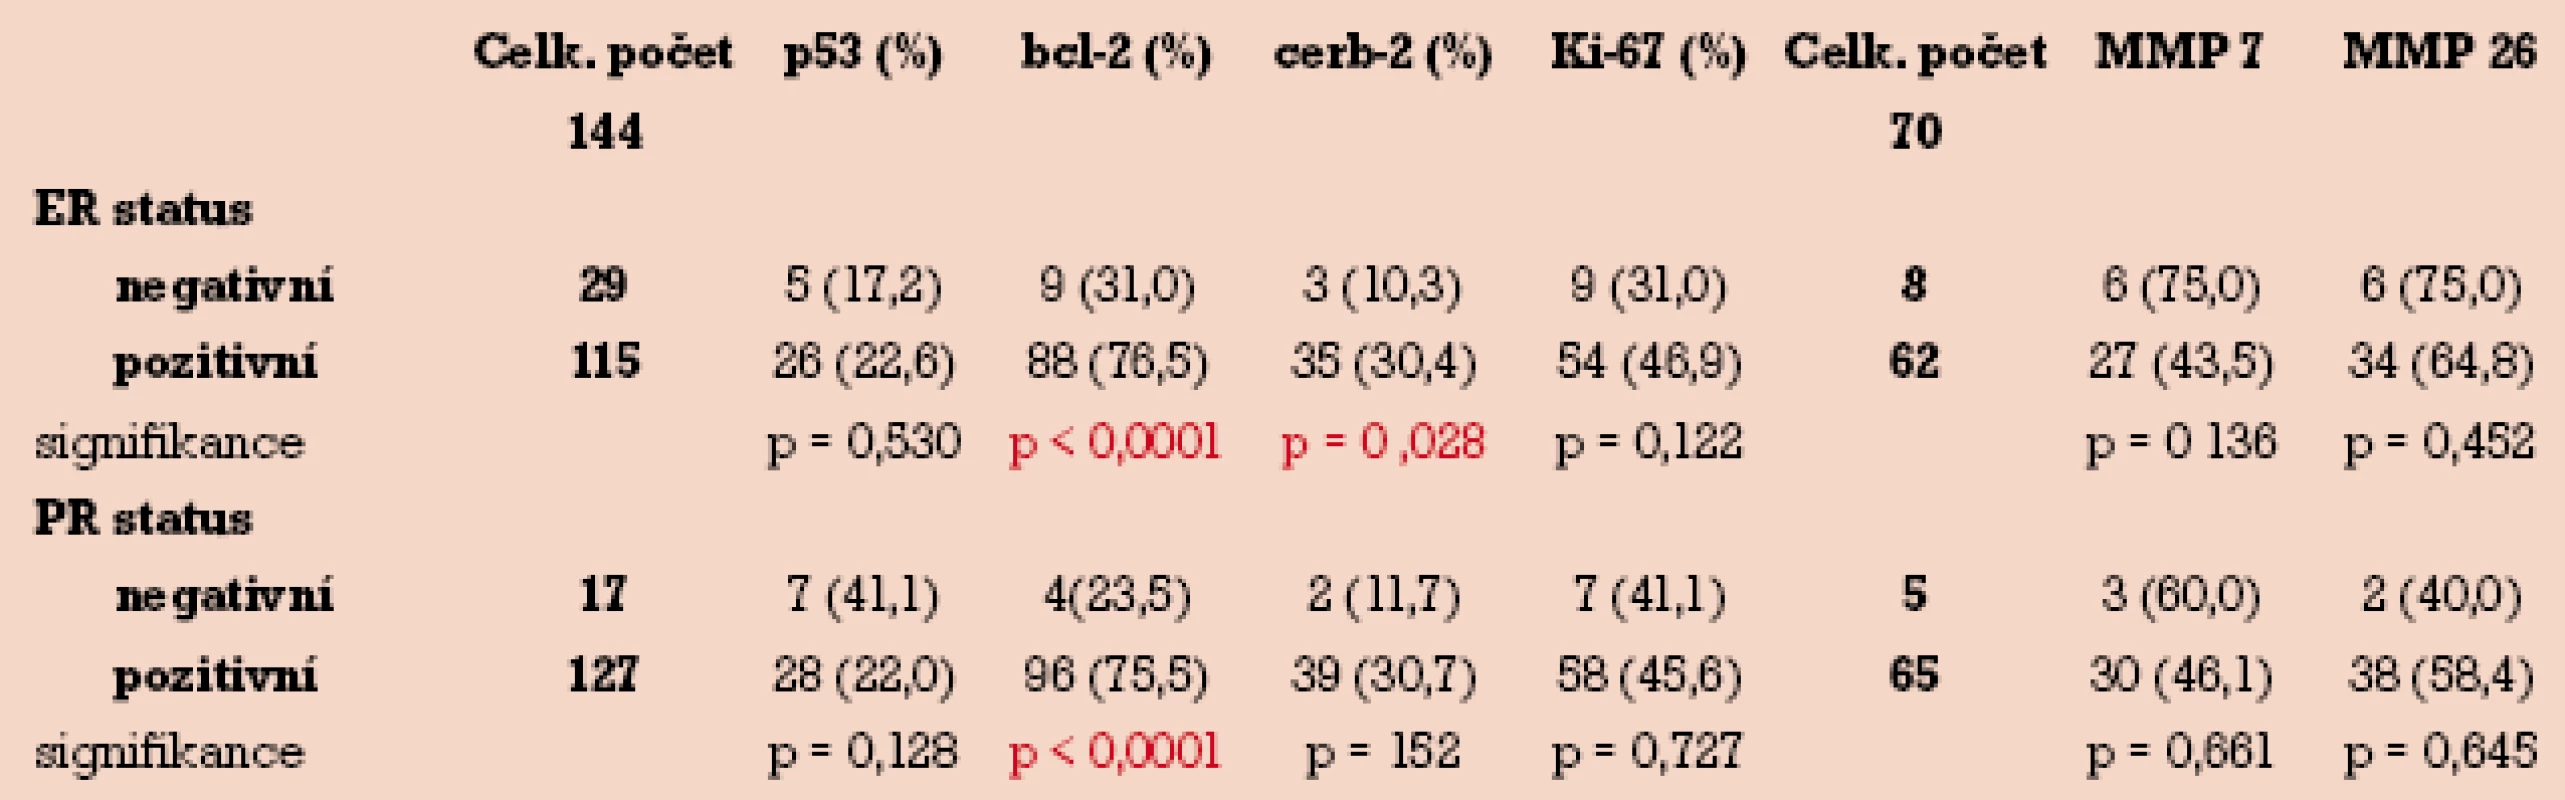 Distribuce imunopozitivity p53, bcl-2, c-erbB-2, Ki-67, MMP-7 a MMP-26 v závislosti na stavu hormonálních receptorů.